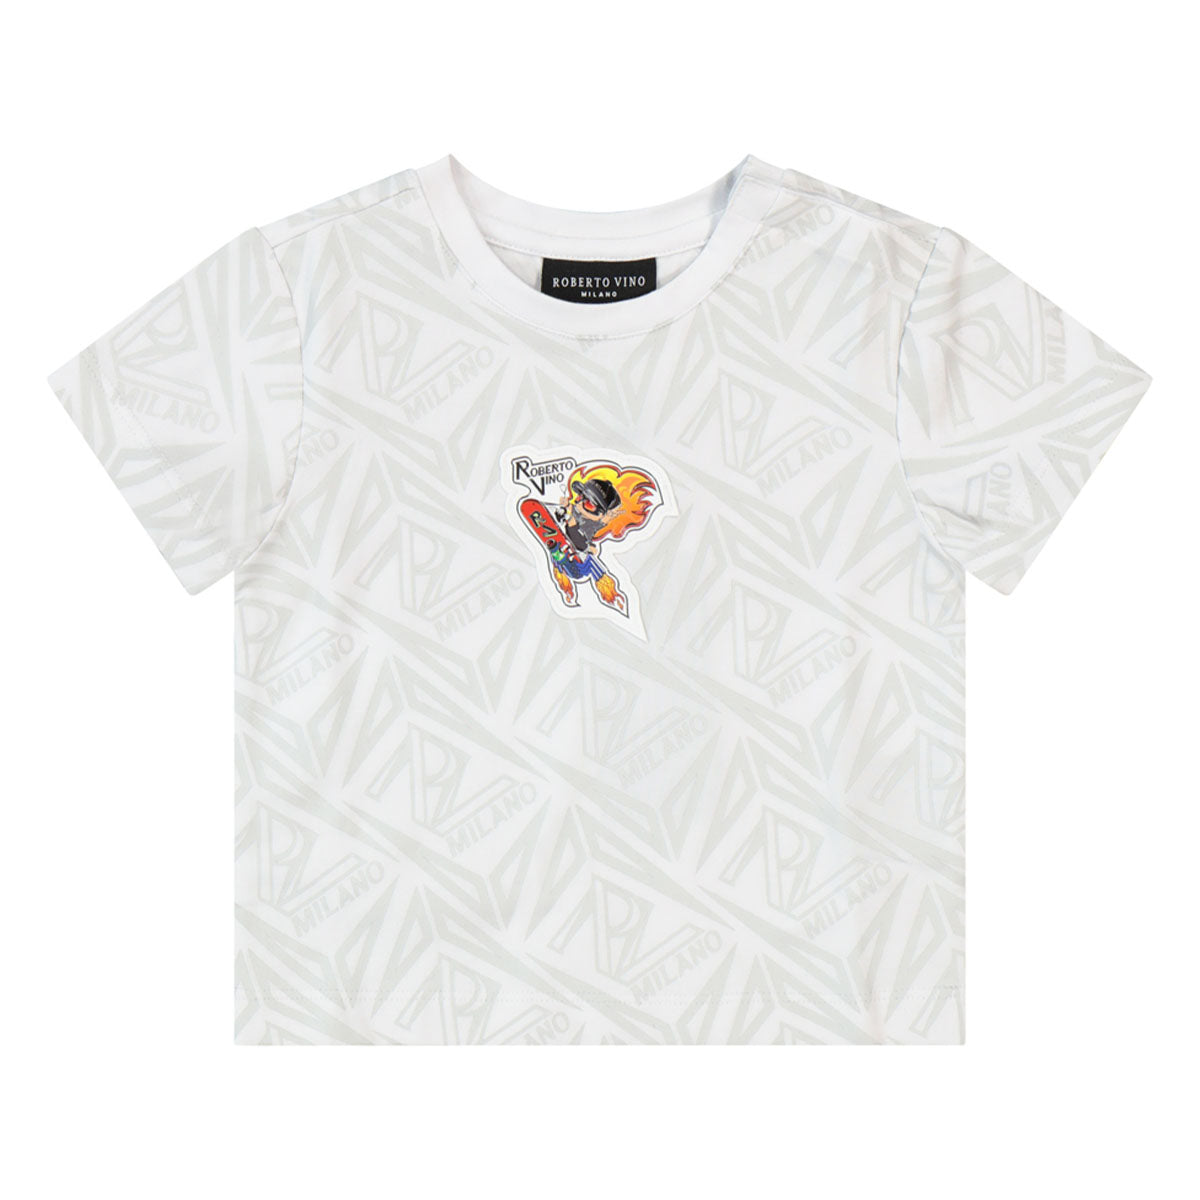 חולצת טי שרט ROBERTO VINO ילד טס באוויר לתינוקות